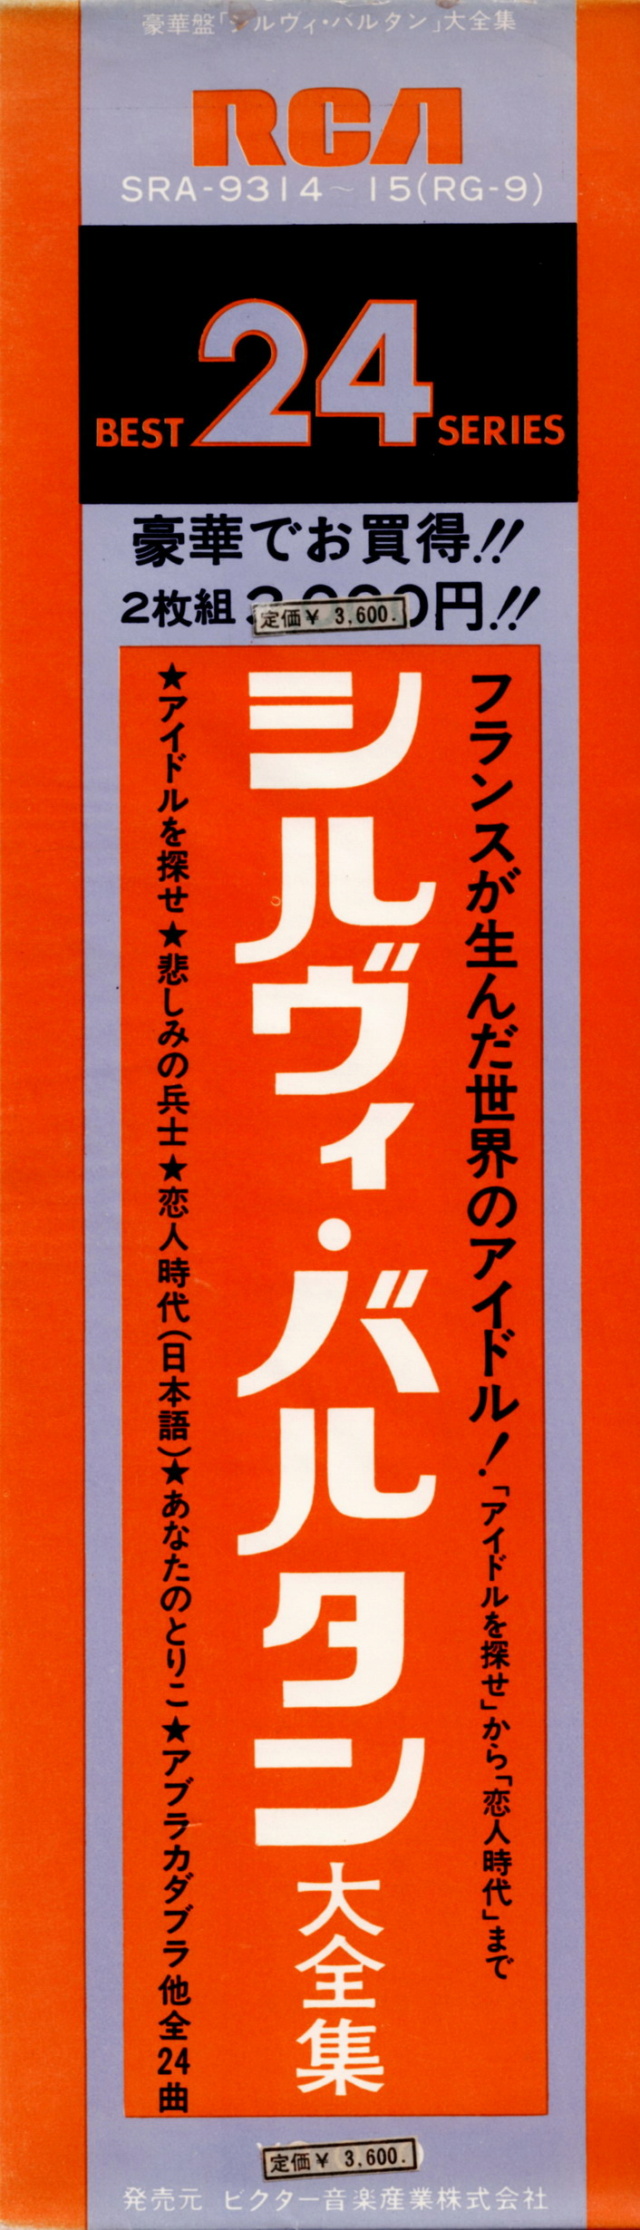 Discographie Japonaise - 4ème partie (33 T COMPILATION) - Page 10 Jpn_3175